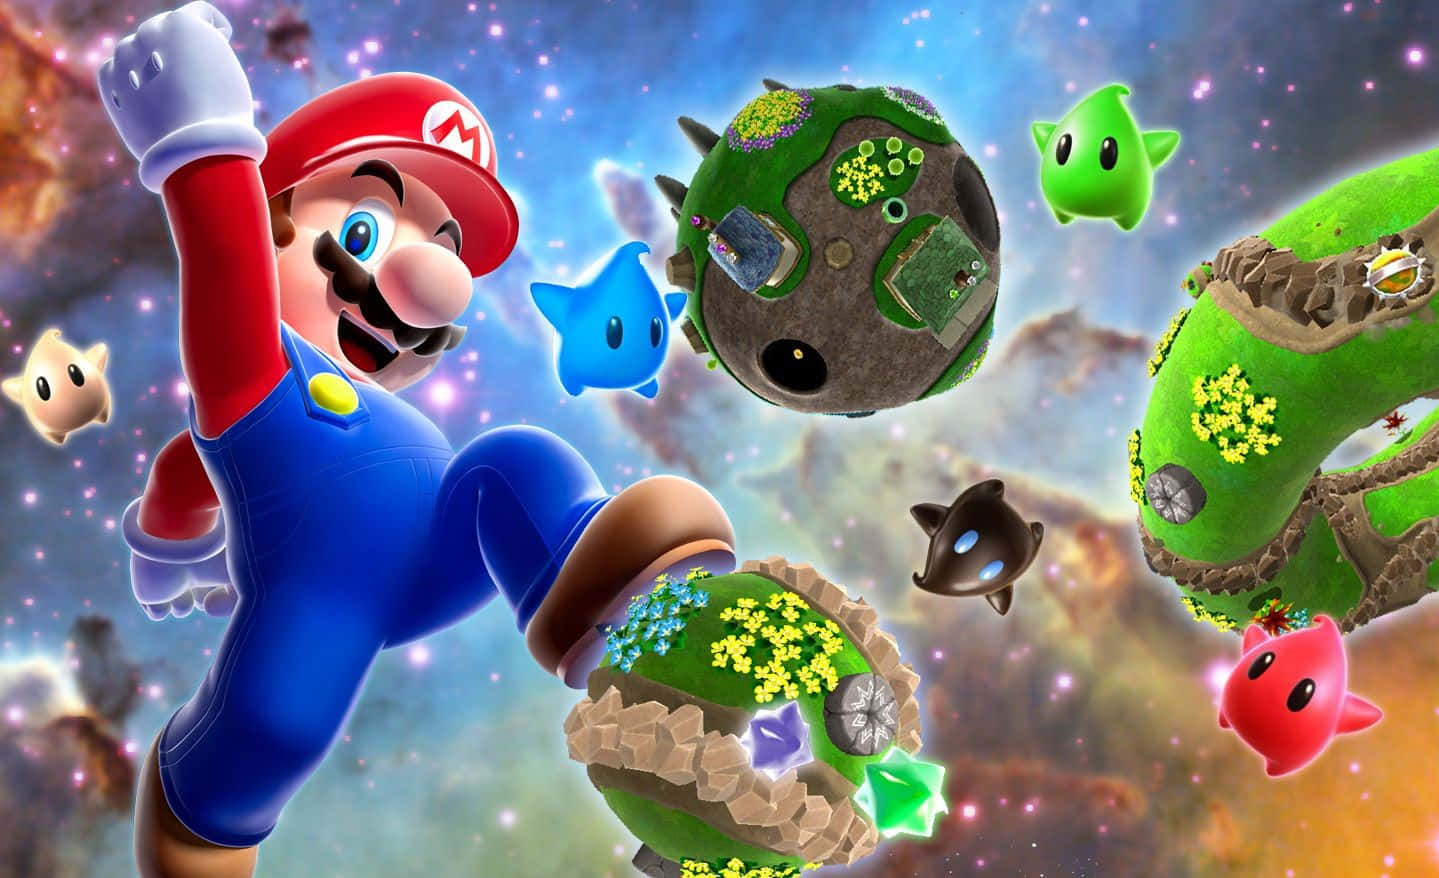 Mario embarks on an intergalactic adventure in Super Mario Galaxy 2 Wallpaper